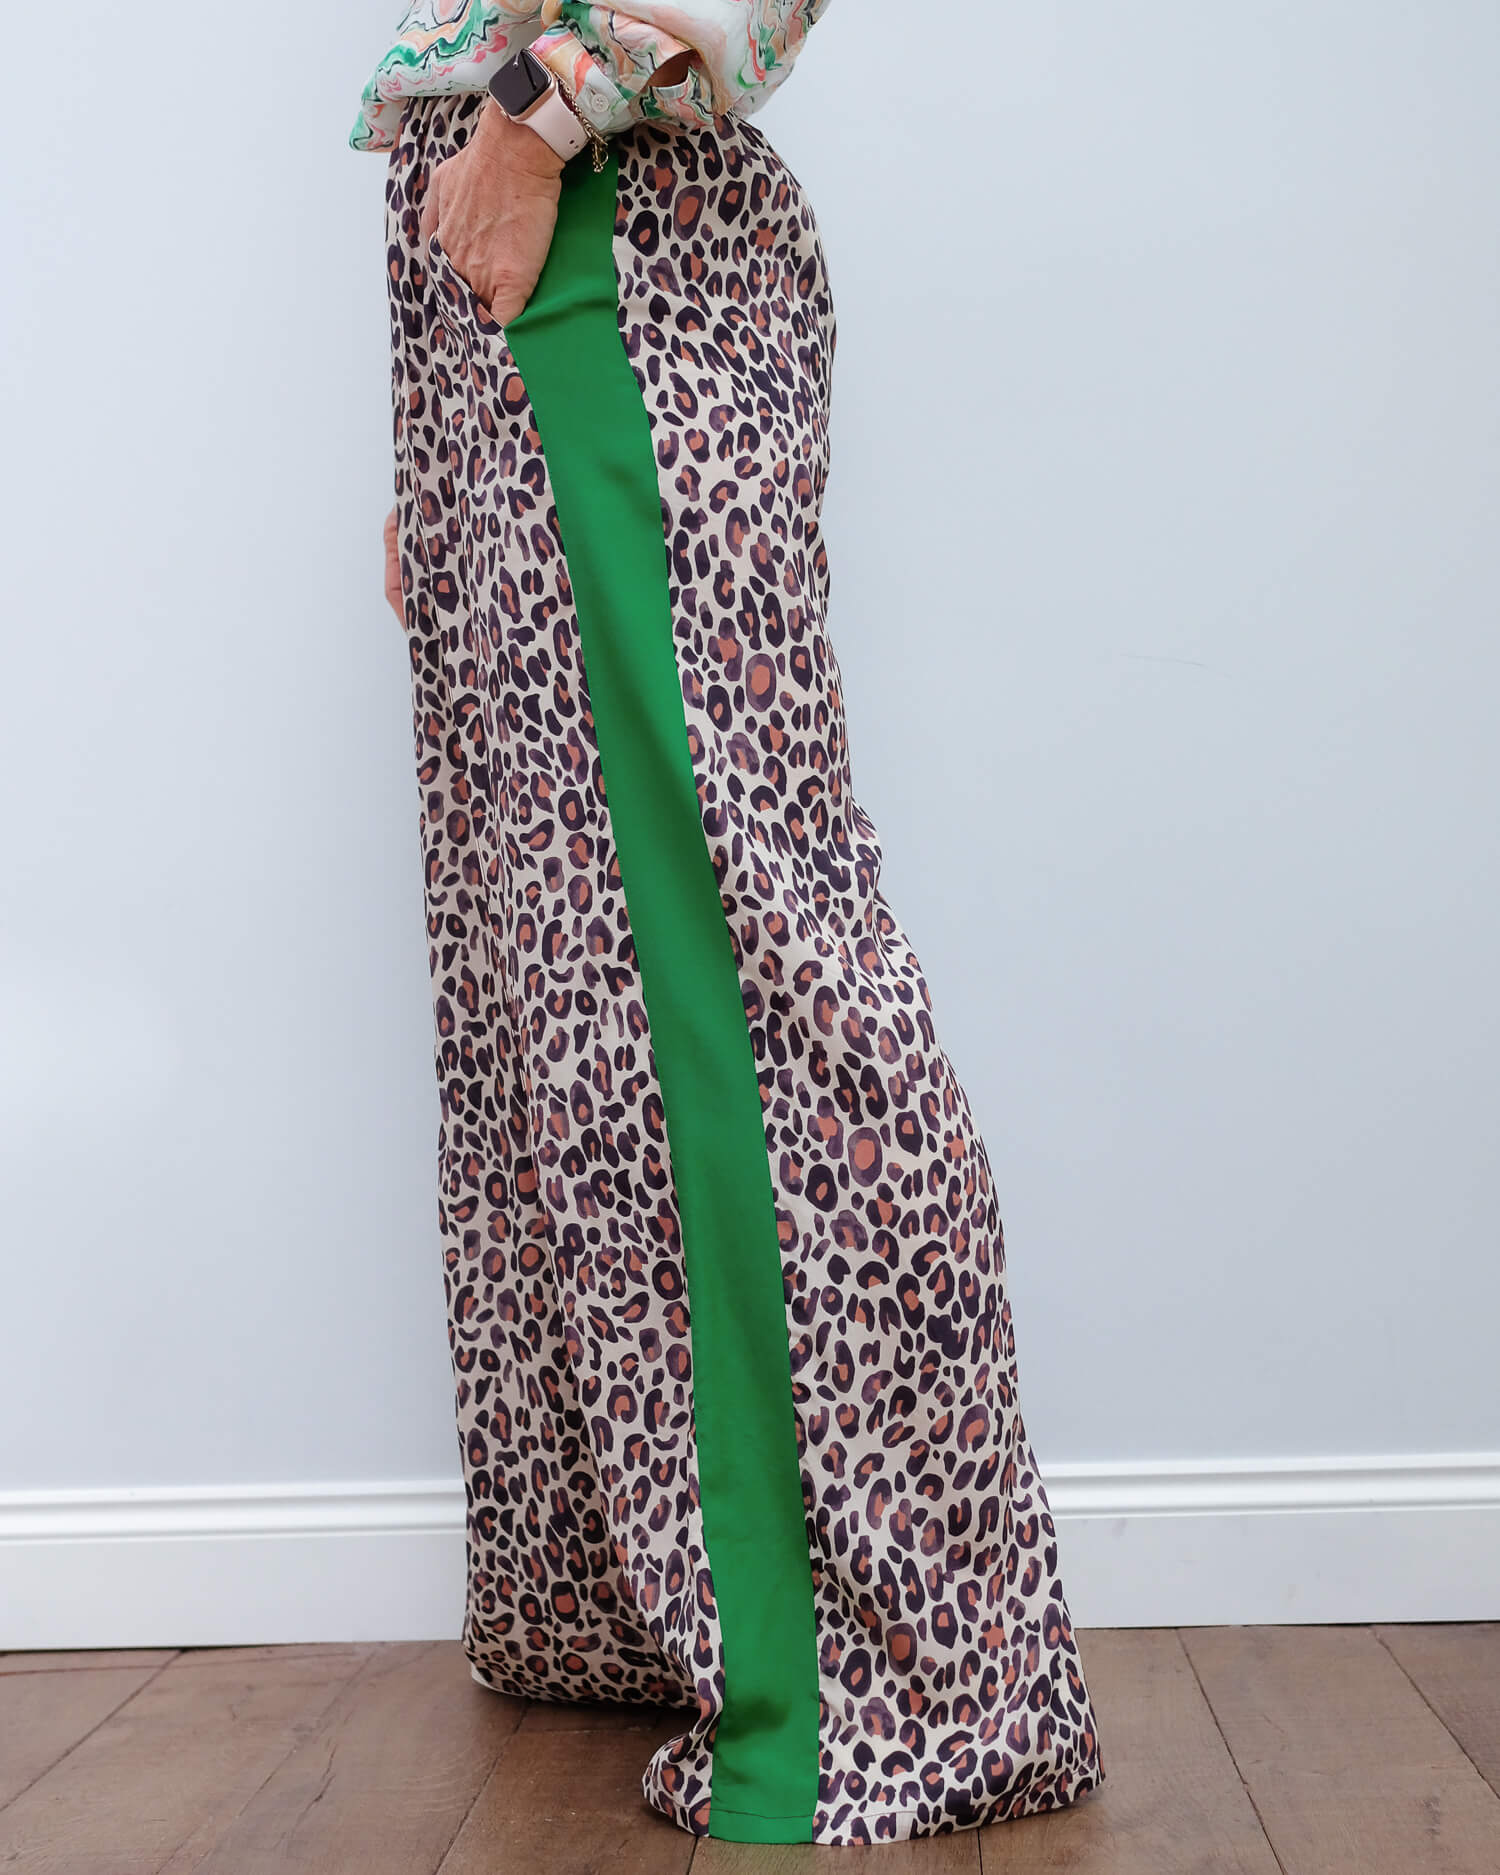 PP Kylie trousers in leopard 04/green stripe